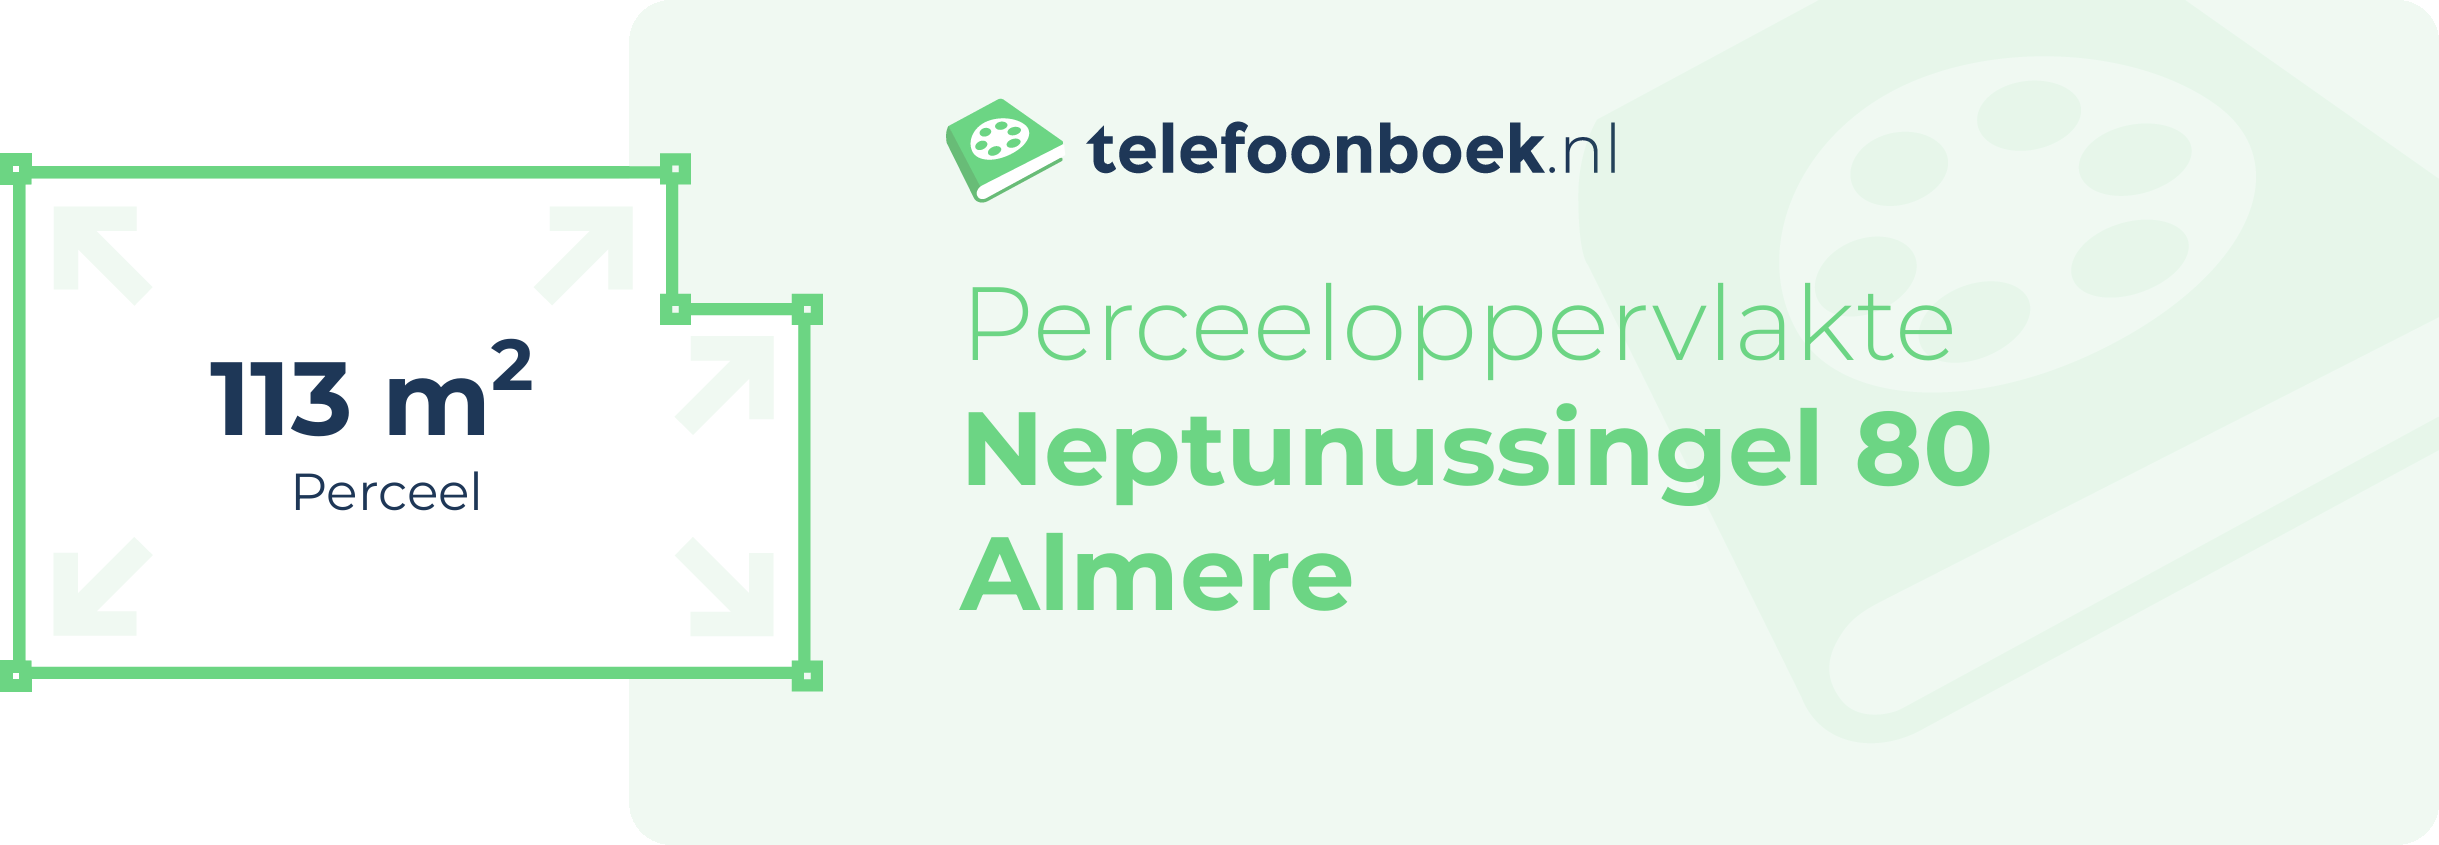 Perceeloppervlakte Neptunussingel 80 Almere